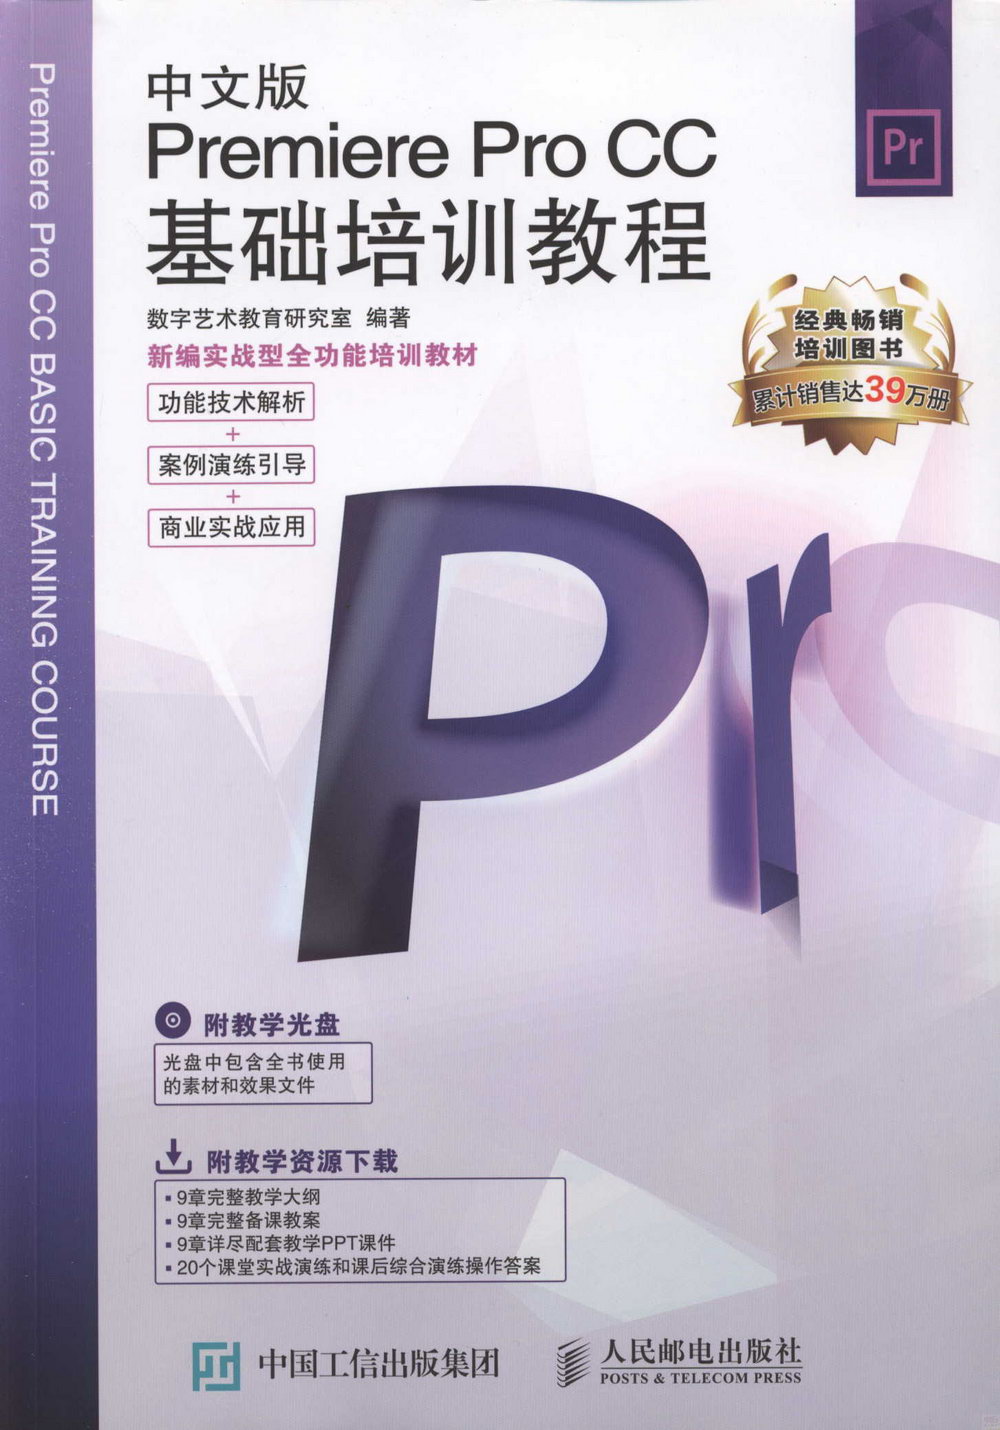 中文版Premiere Pro CC基礎培訓教程